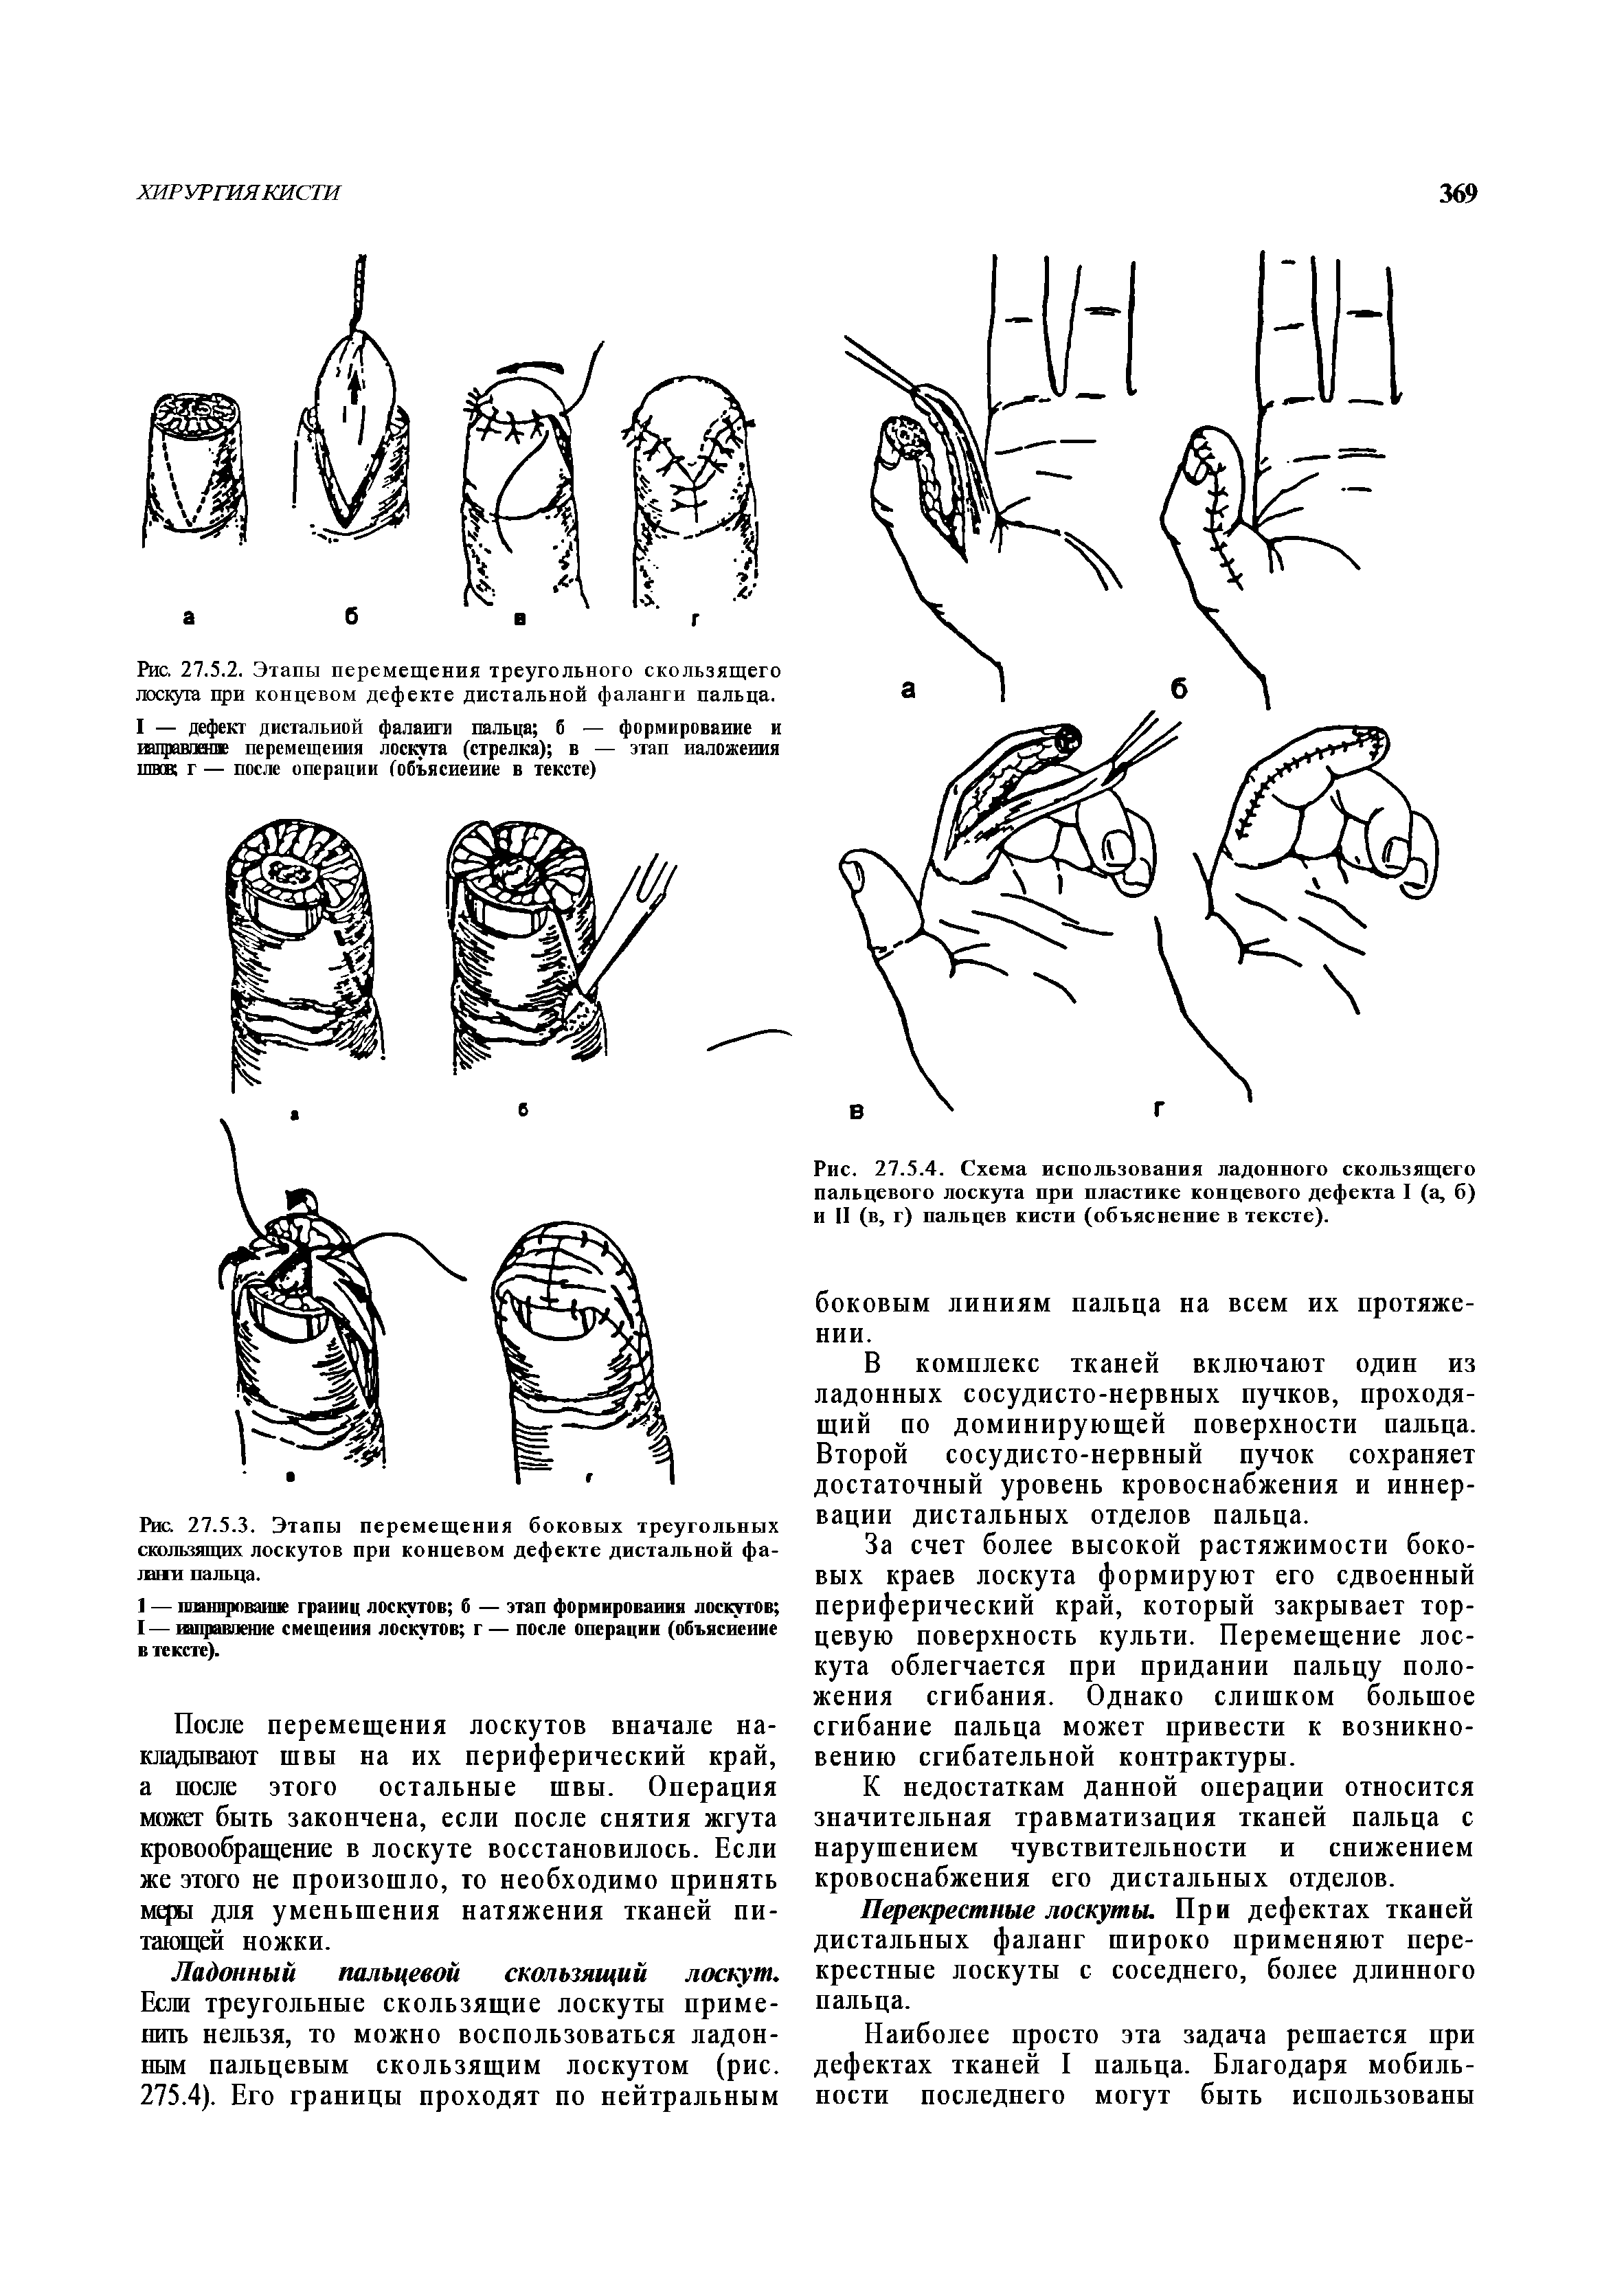 Рис. 27.5.4. Схема использования ладонного скользящего пальцевого лоскута при пластике концевого дефекта I (а, б) и II (в, г) пальцев кисти (объяснение в тексте).